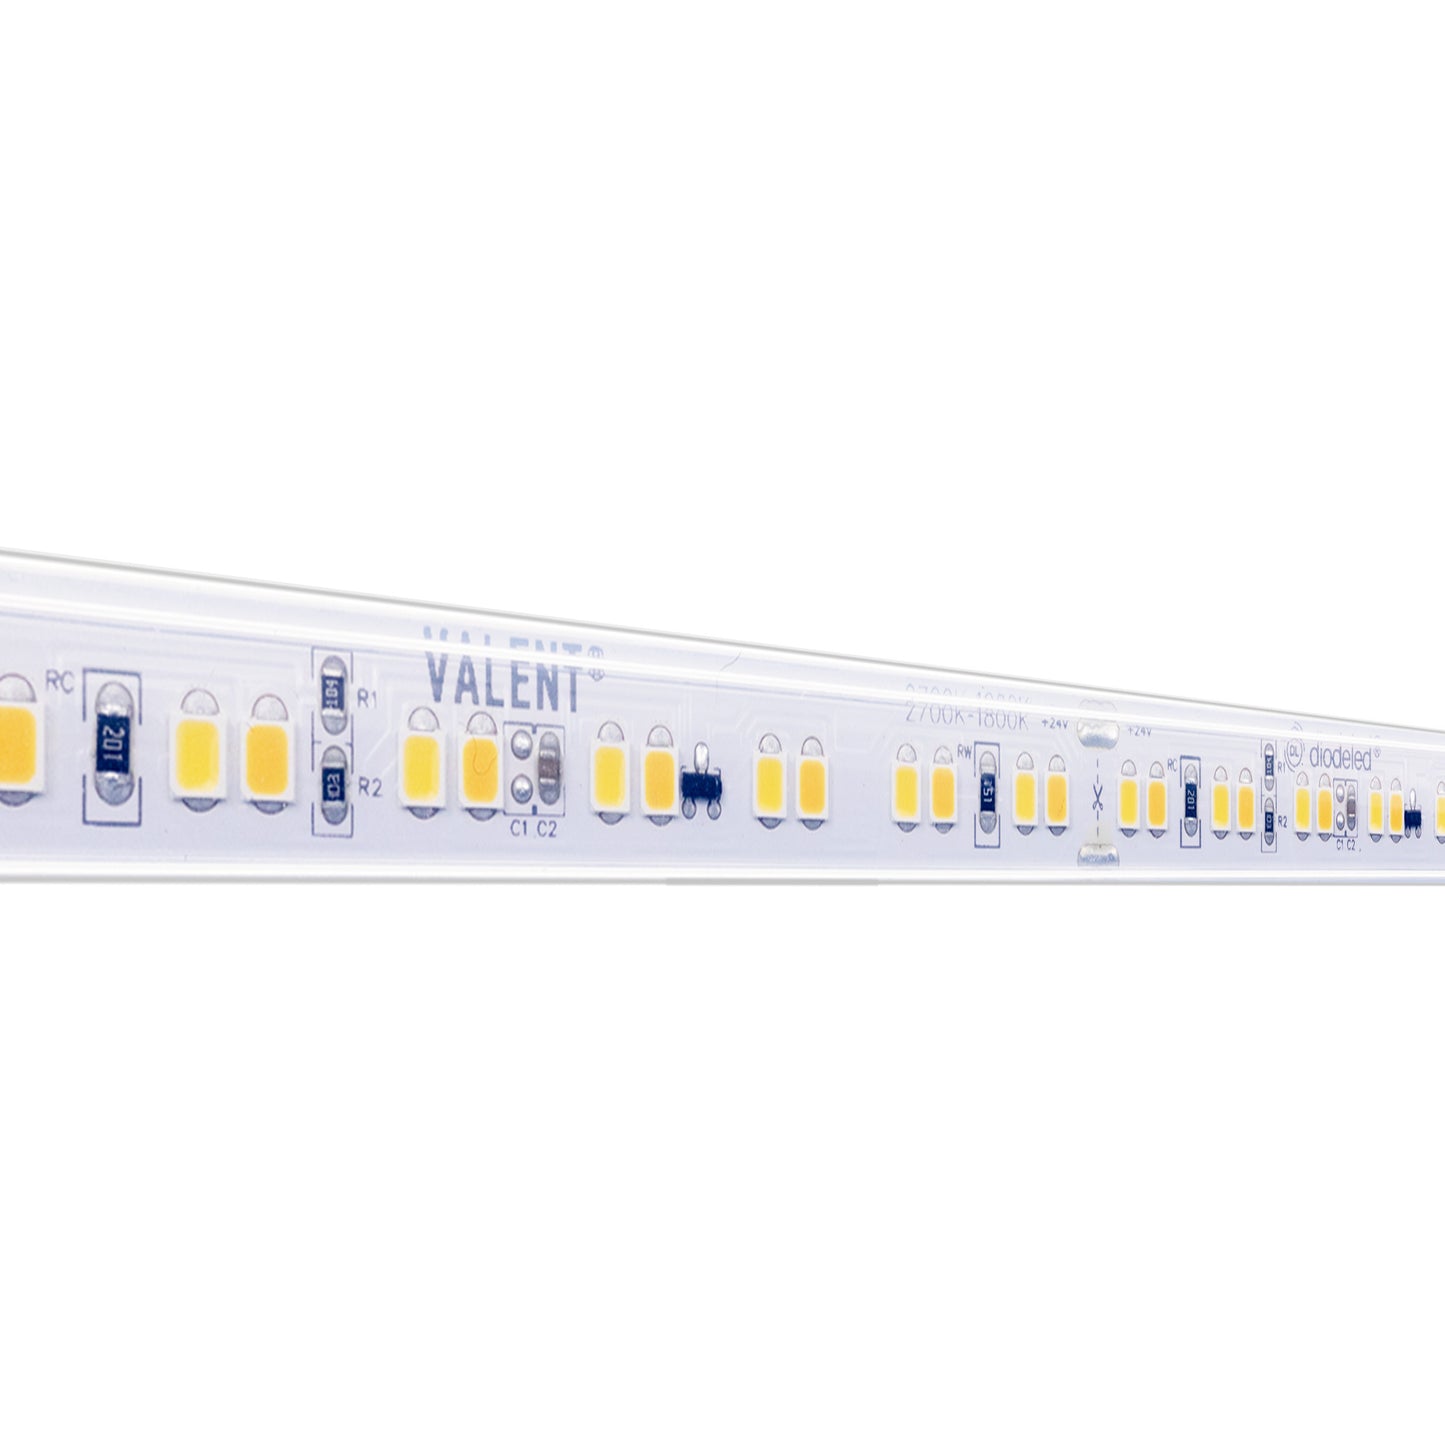 Diode LED DI-24V-VL4-WD3018-W100 100ft 4.4W/ft Valent Warm Dim Wet Location LED Tape Light 3000K-1800K 24V